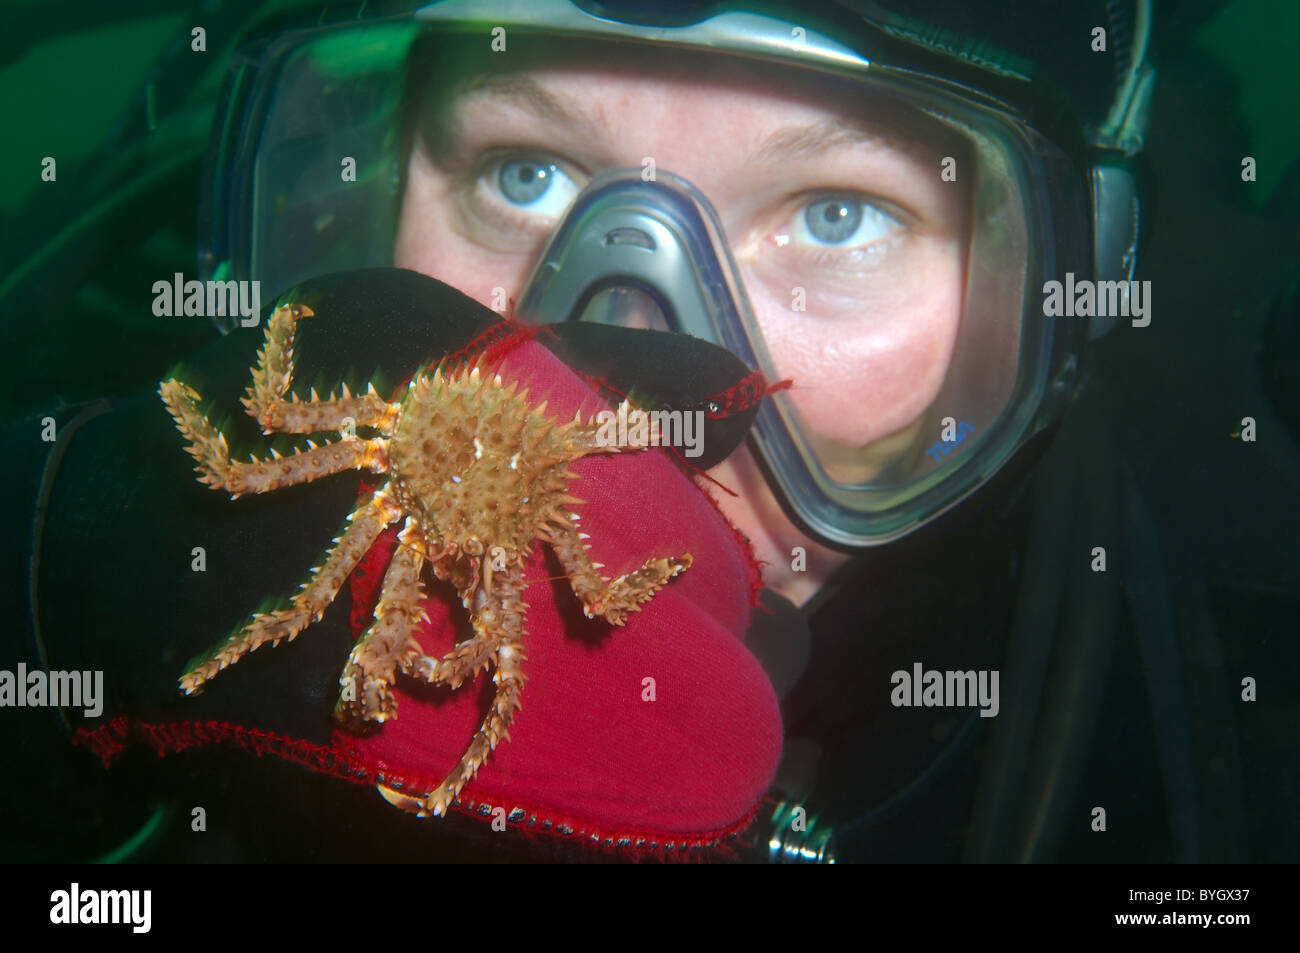 Baby Red King Crab (Paralithodes camtschaticus) Krabbe sitzt auf einem weiblichen Scuba diver Hand sitzt auf dem Handschuh eines weiblichen Scuba diver Stockfoto